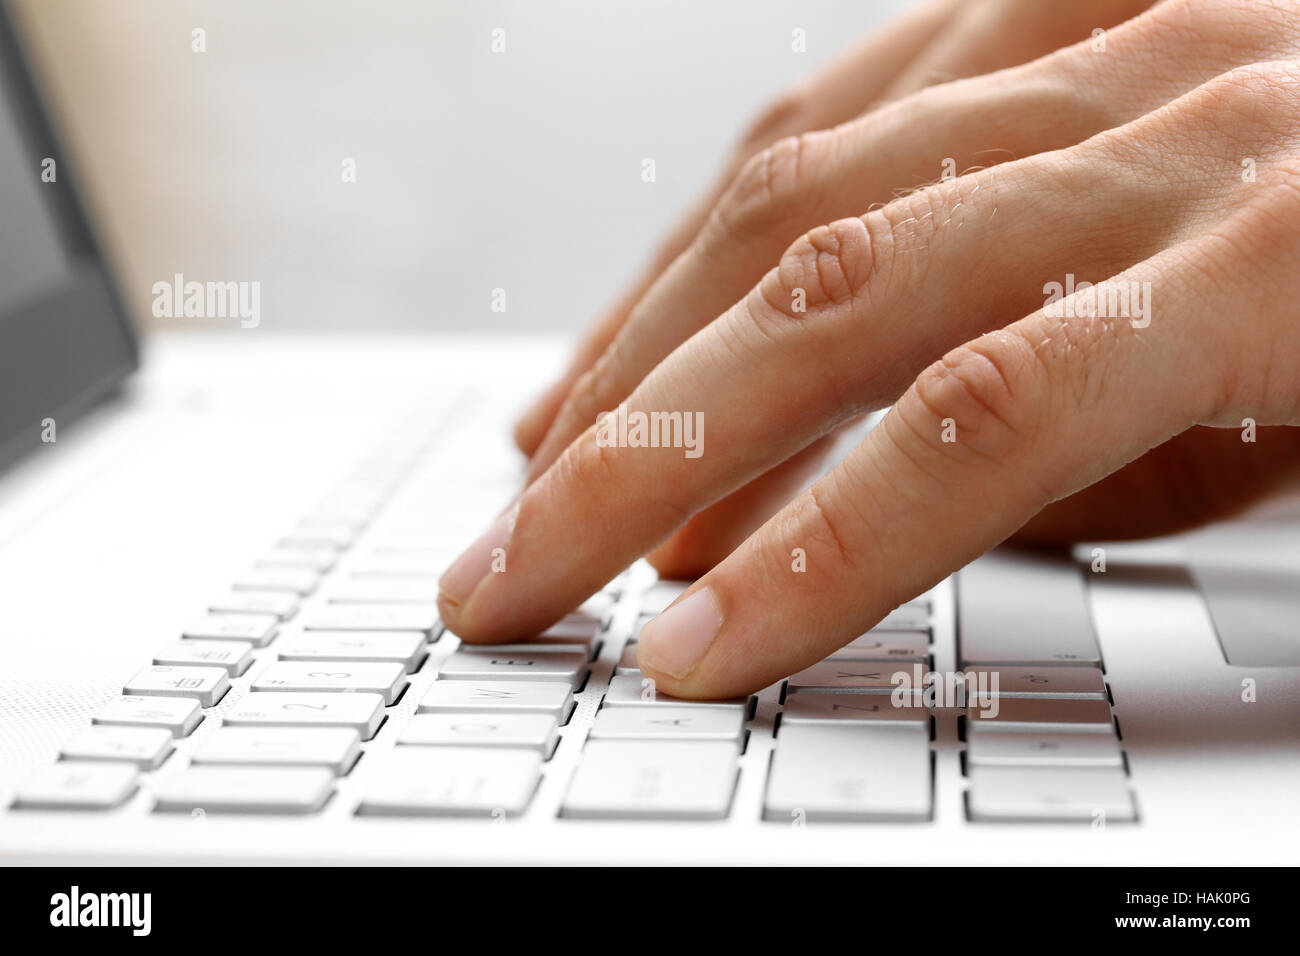 Dedos escribiendo en el teclado del ordenador portátil blanco Foto de stock